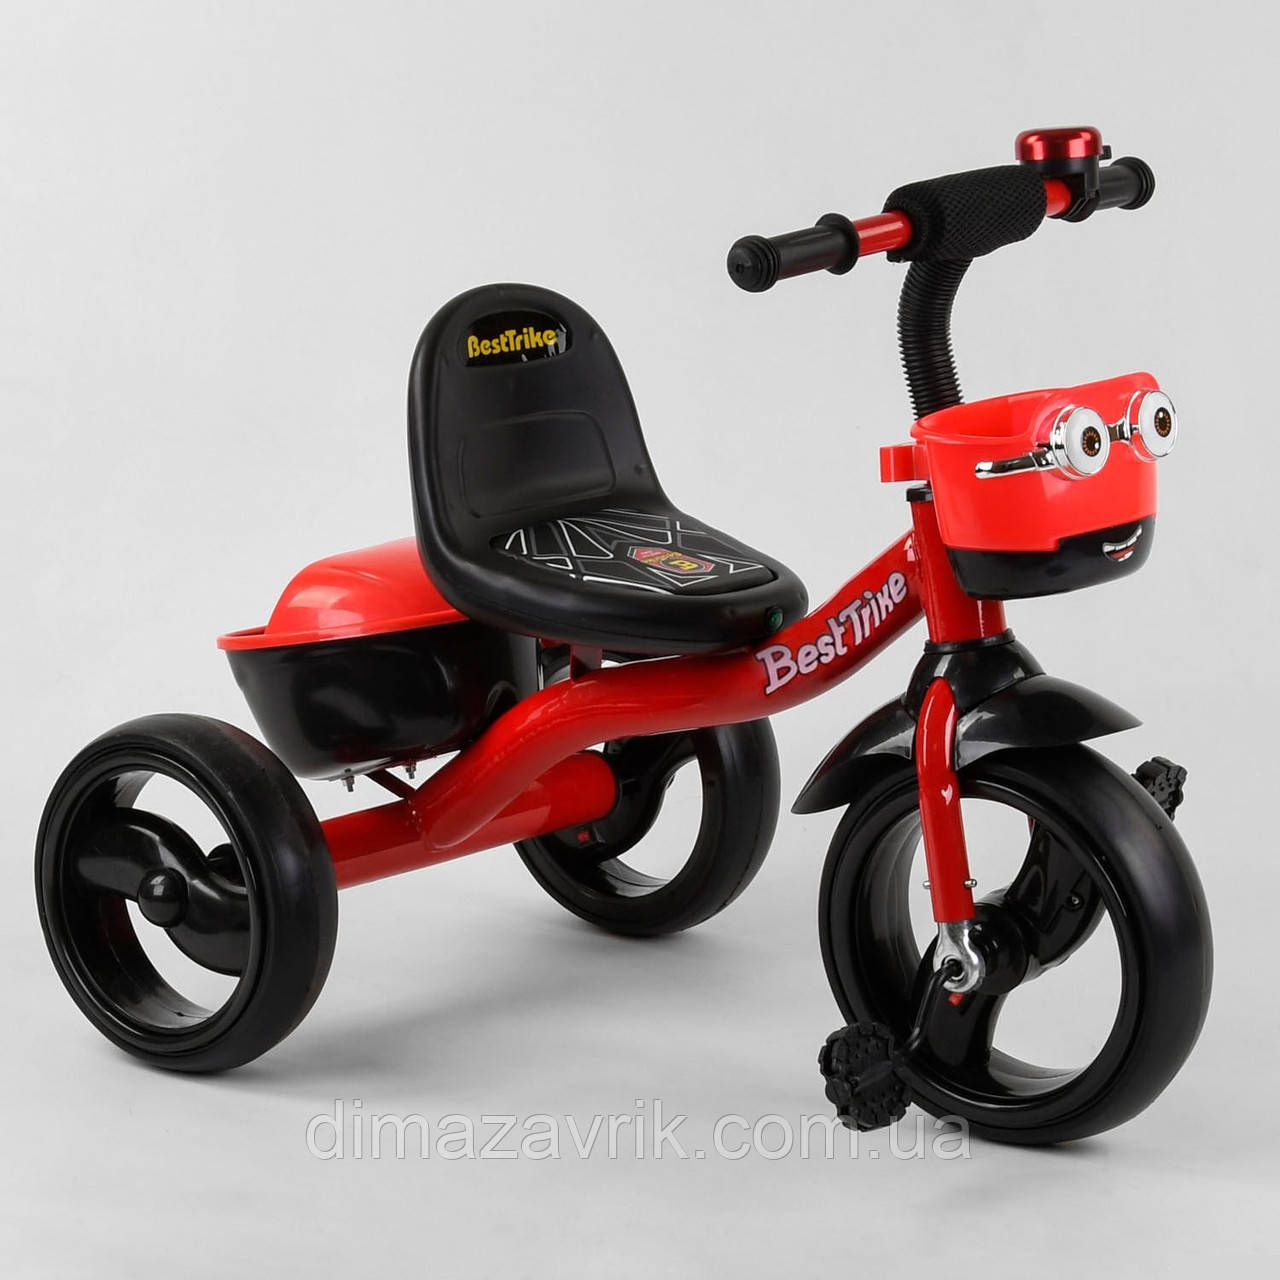 Велосипед 3-х колёсный 97282 Best Trike Красный, пена колесо EVA со светом и звуком, звоночек, 2 корзины